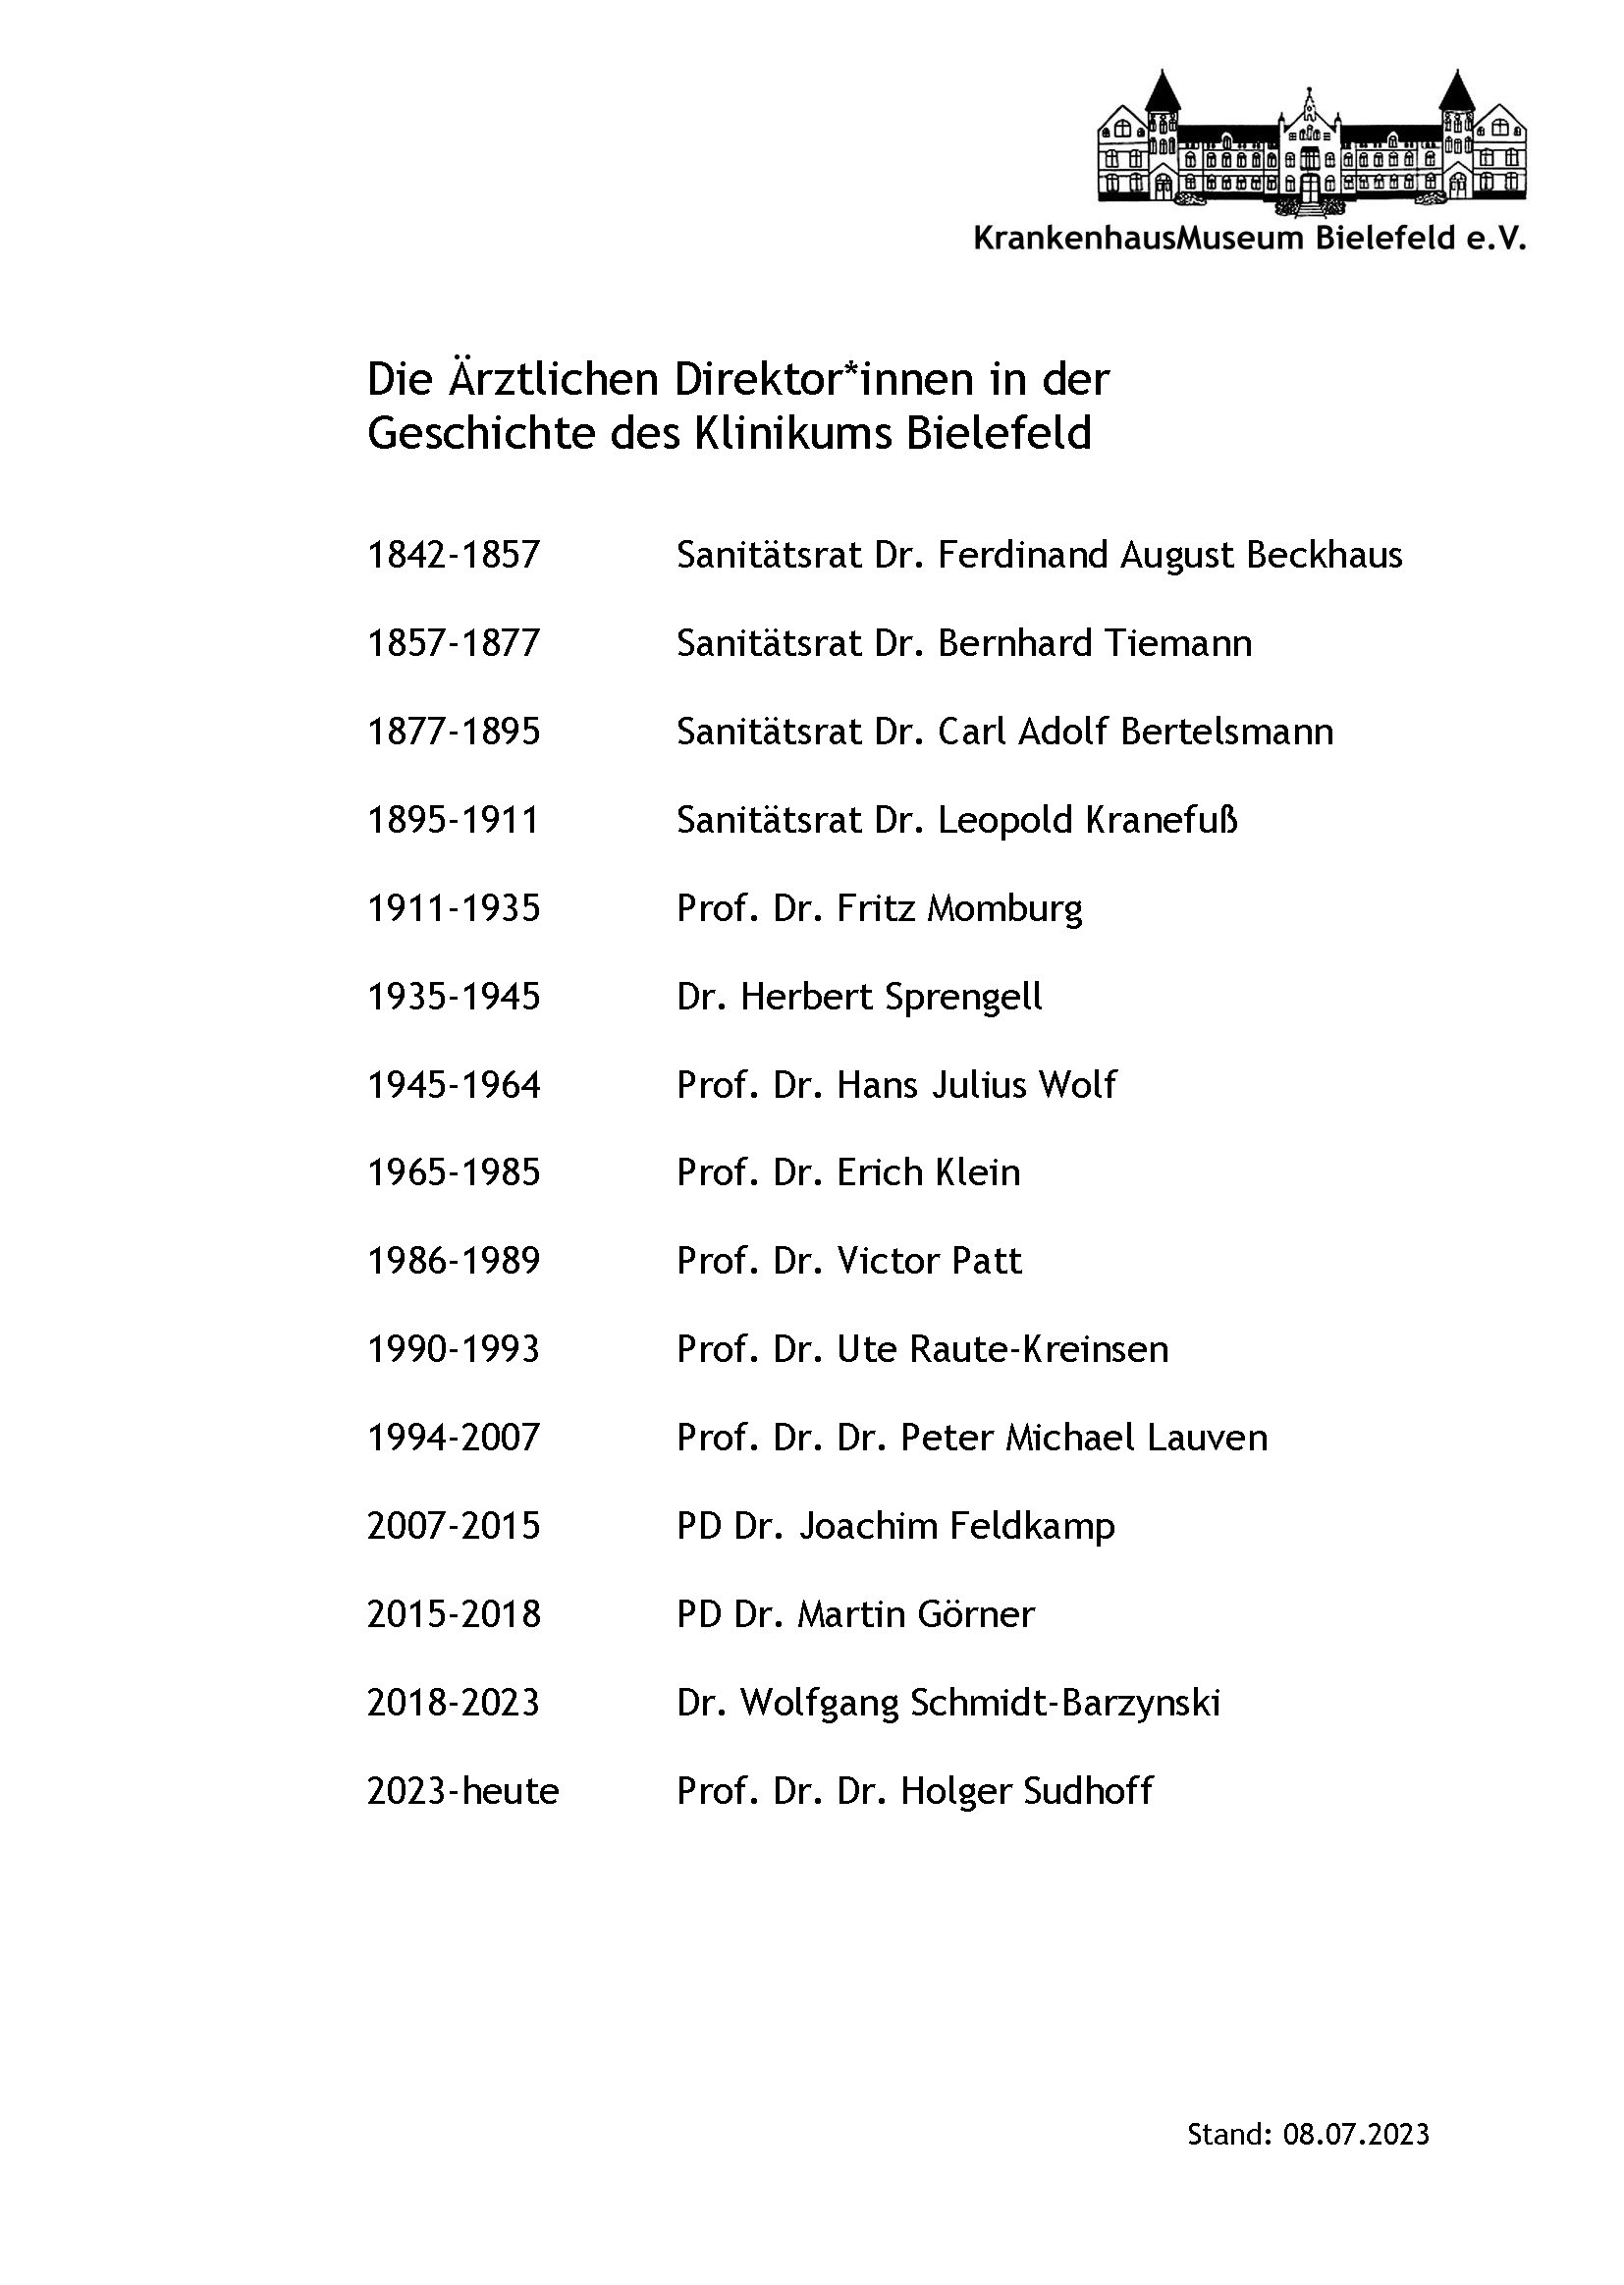 Die Ärztlichen Direktor*innen in der Geschichte des Klinikums Bielefeld (Krankenhausmuseum Bielefeld e.V. CC BY-NC-SA)